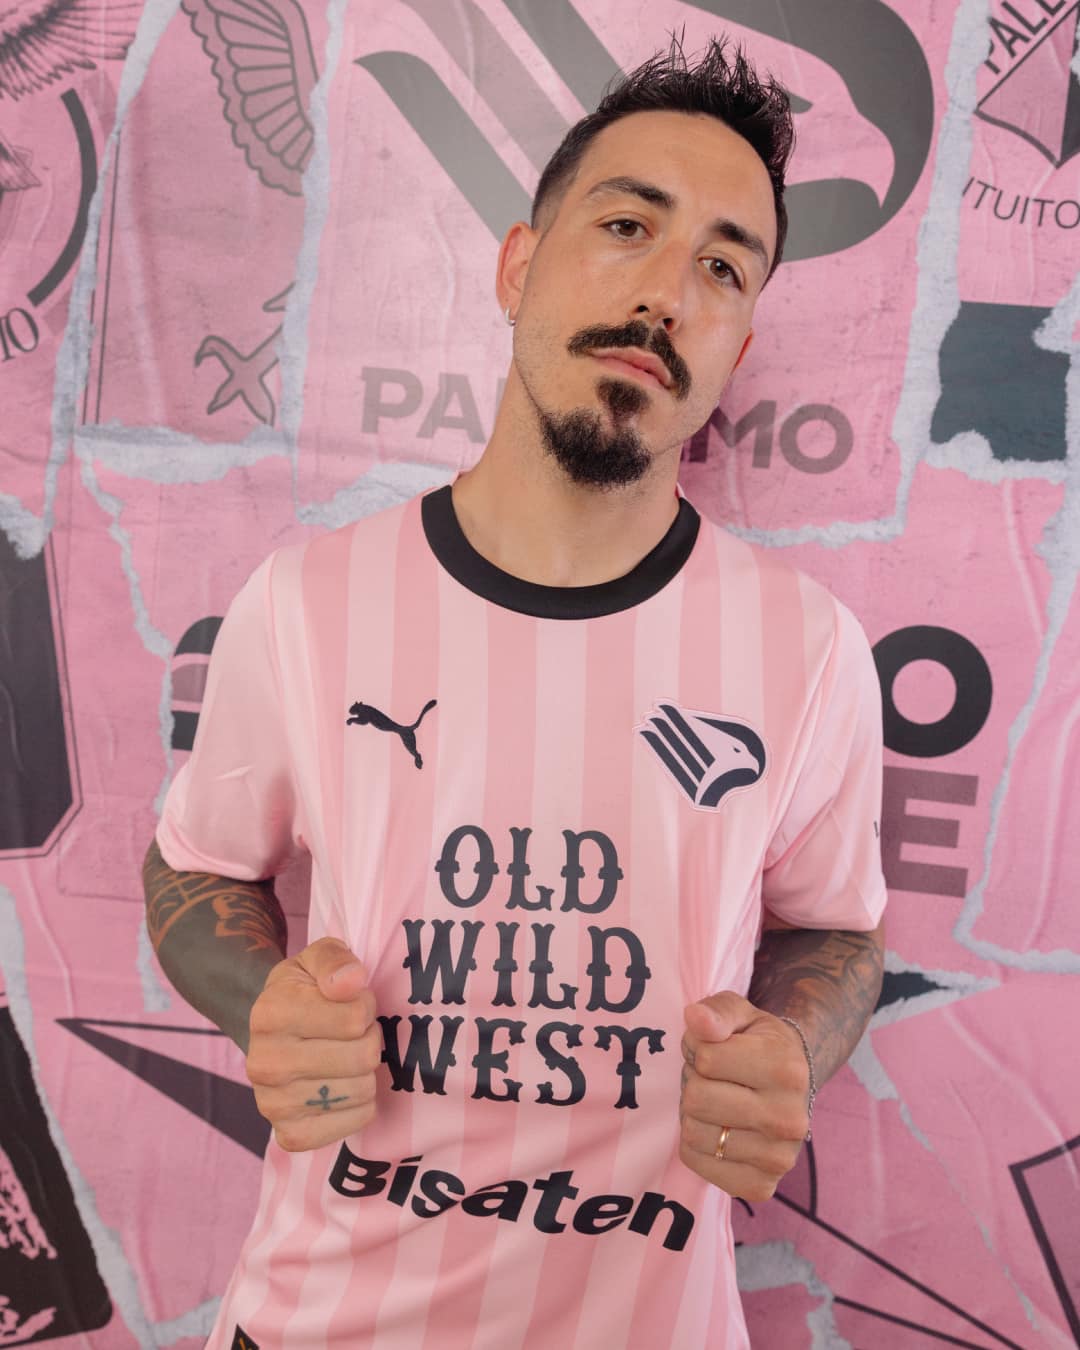 Palermo, presentata la maglia Home 23/24: torna la collaborazione con Puma